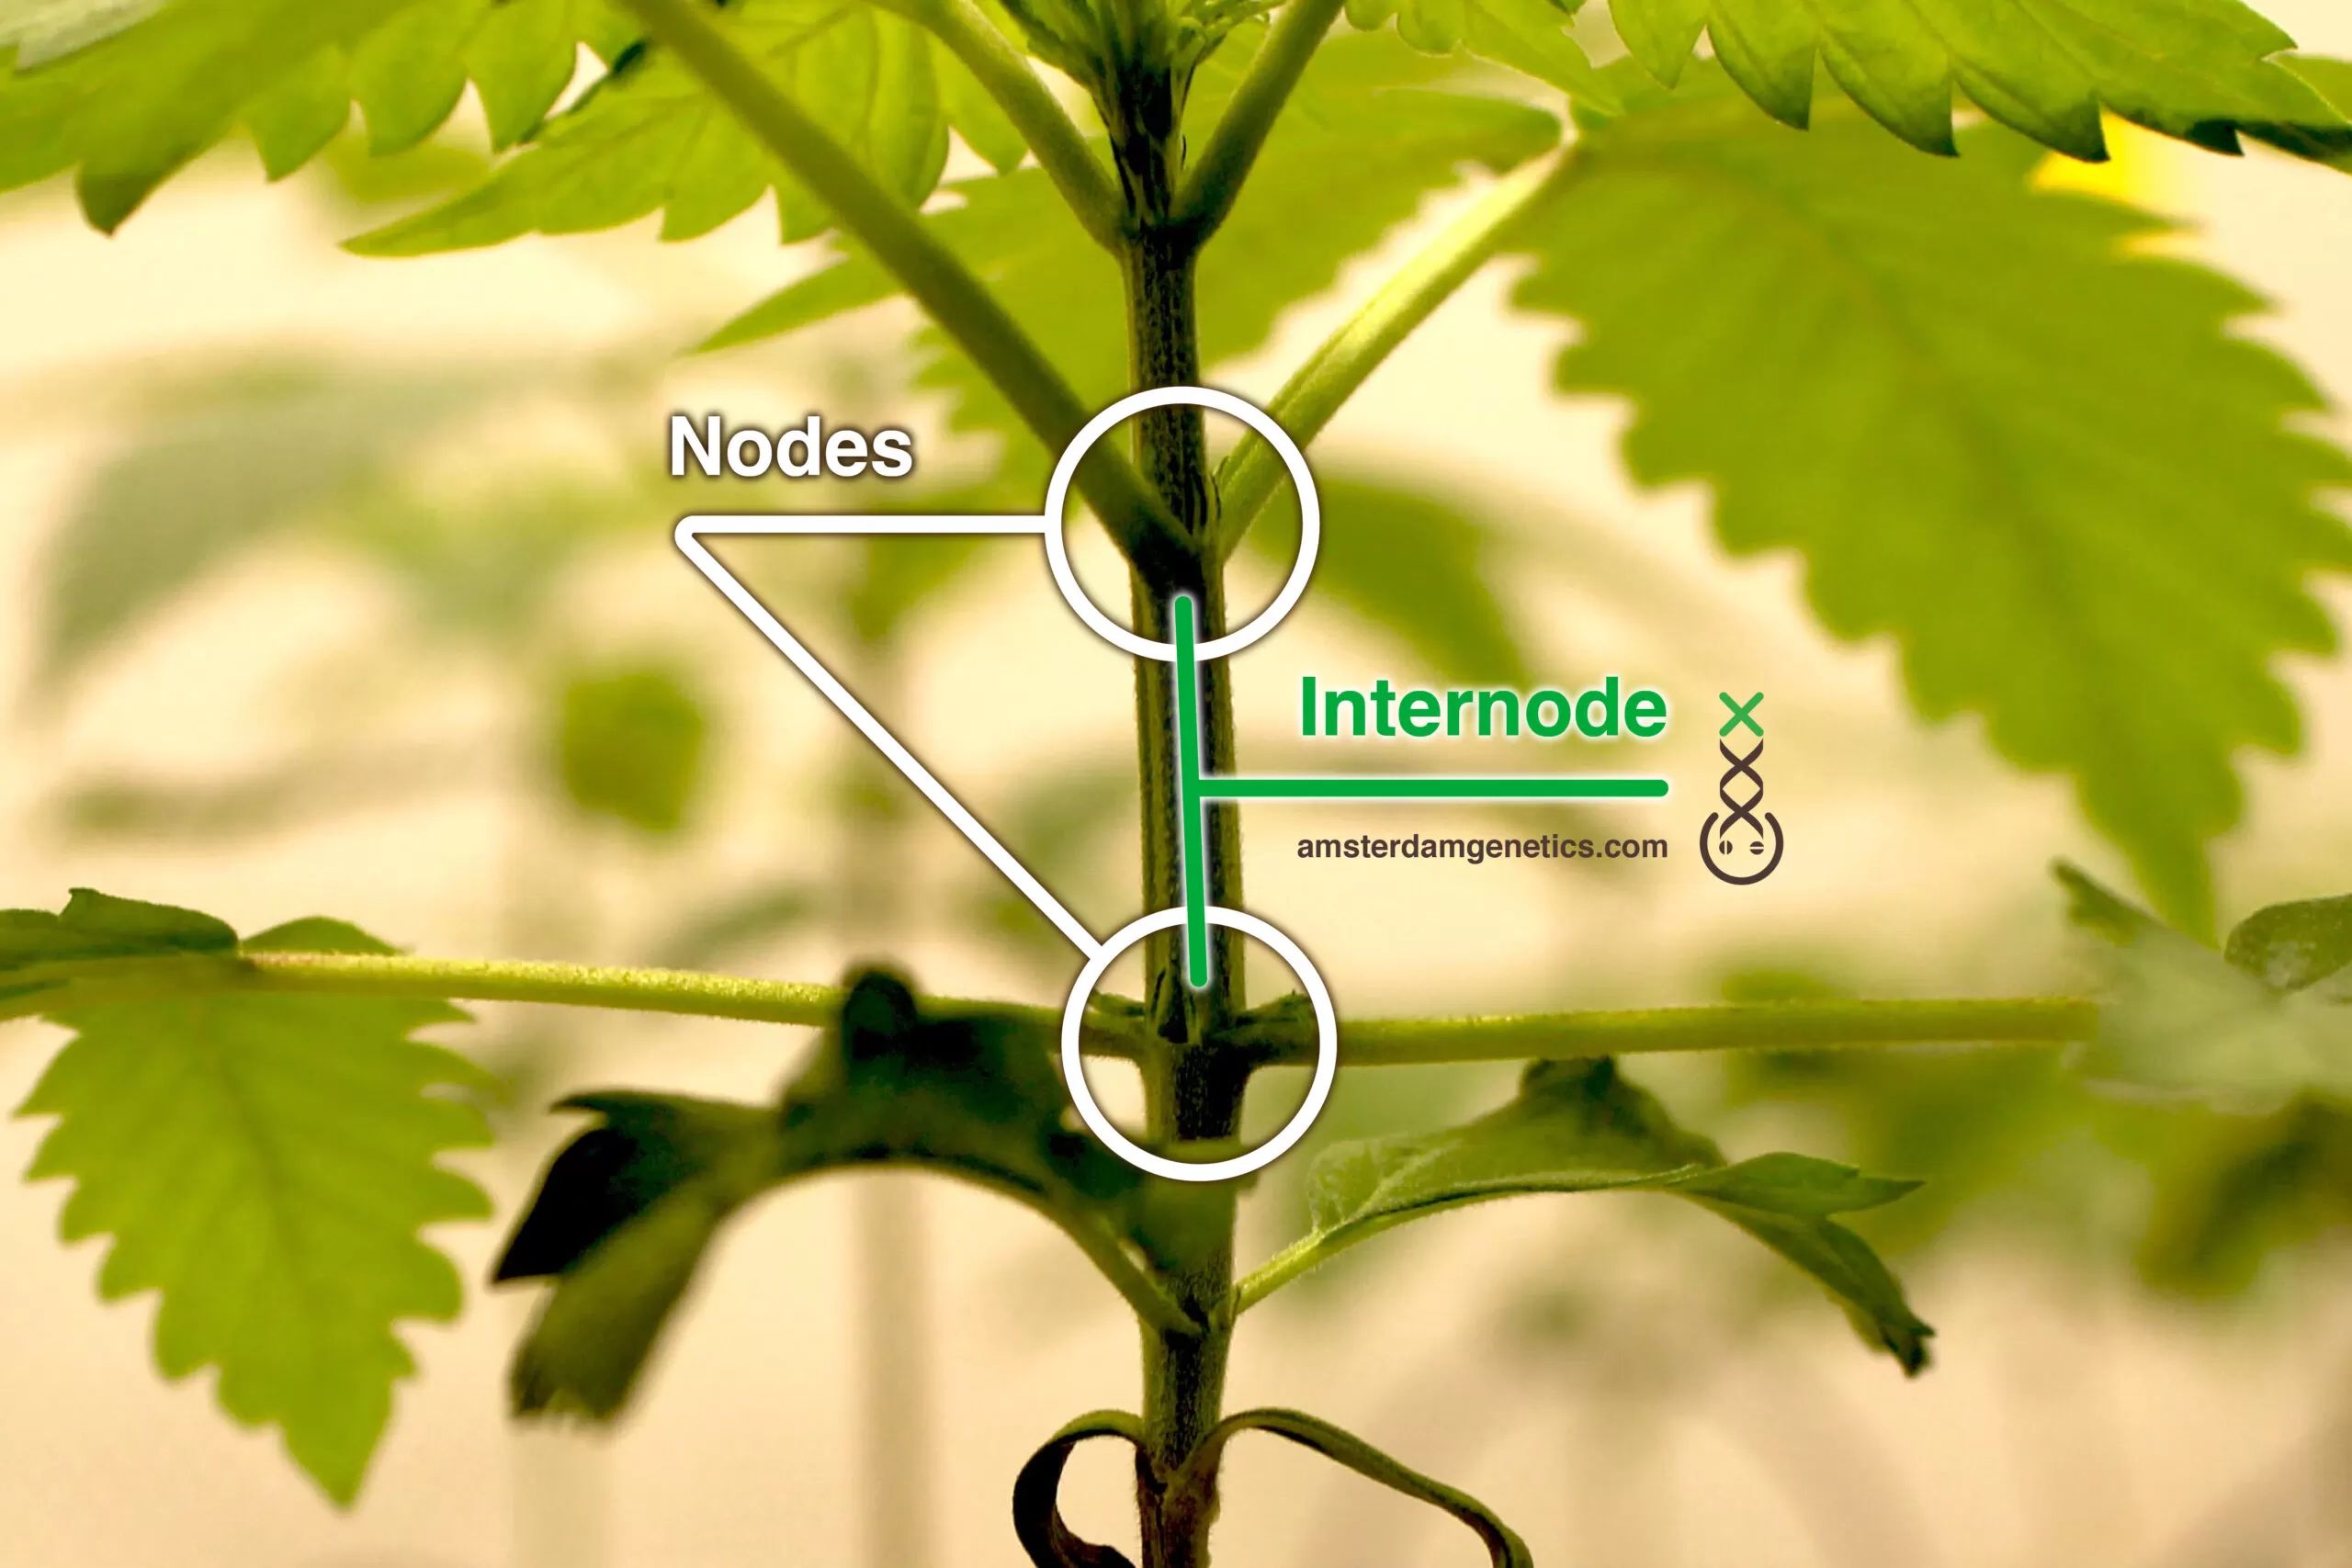 nodes node internodes internode Amsterdam Genetics 